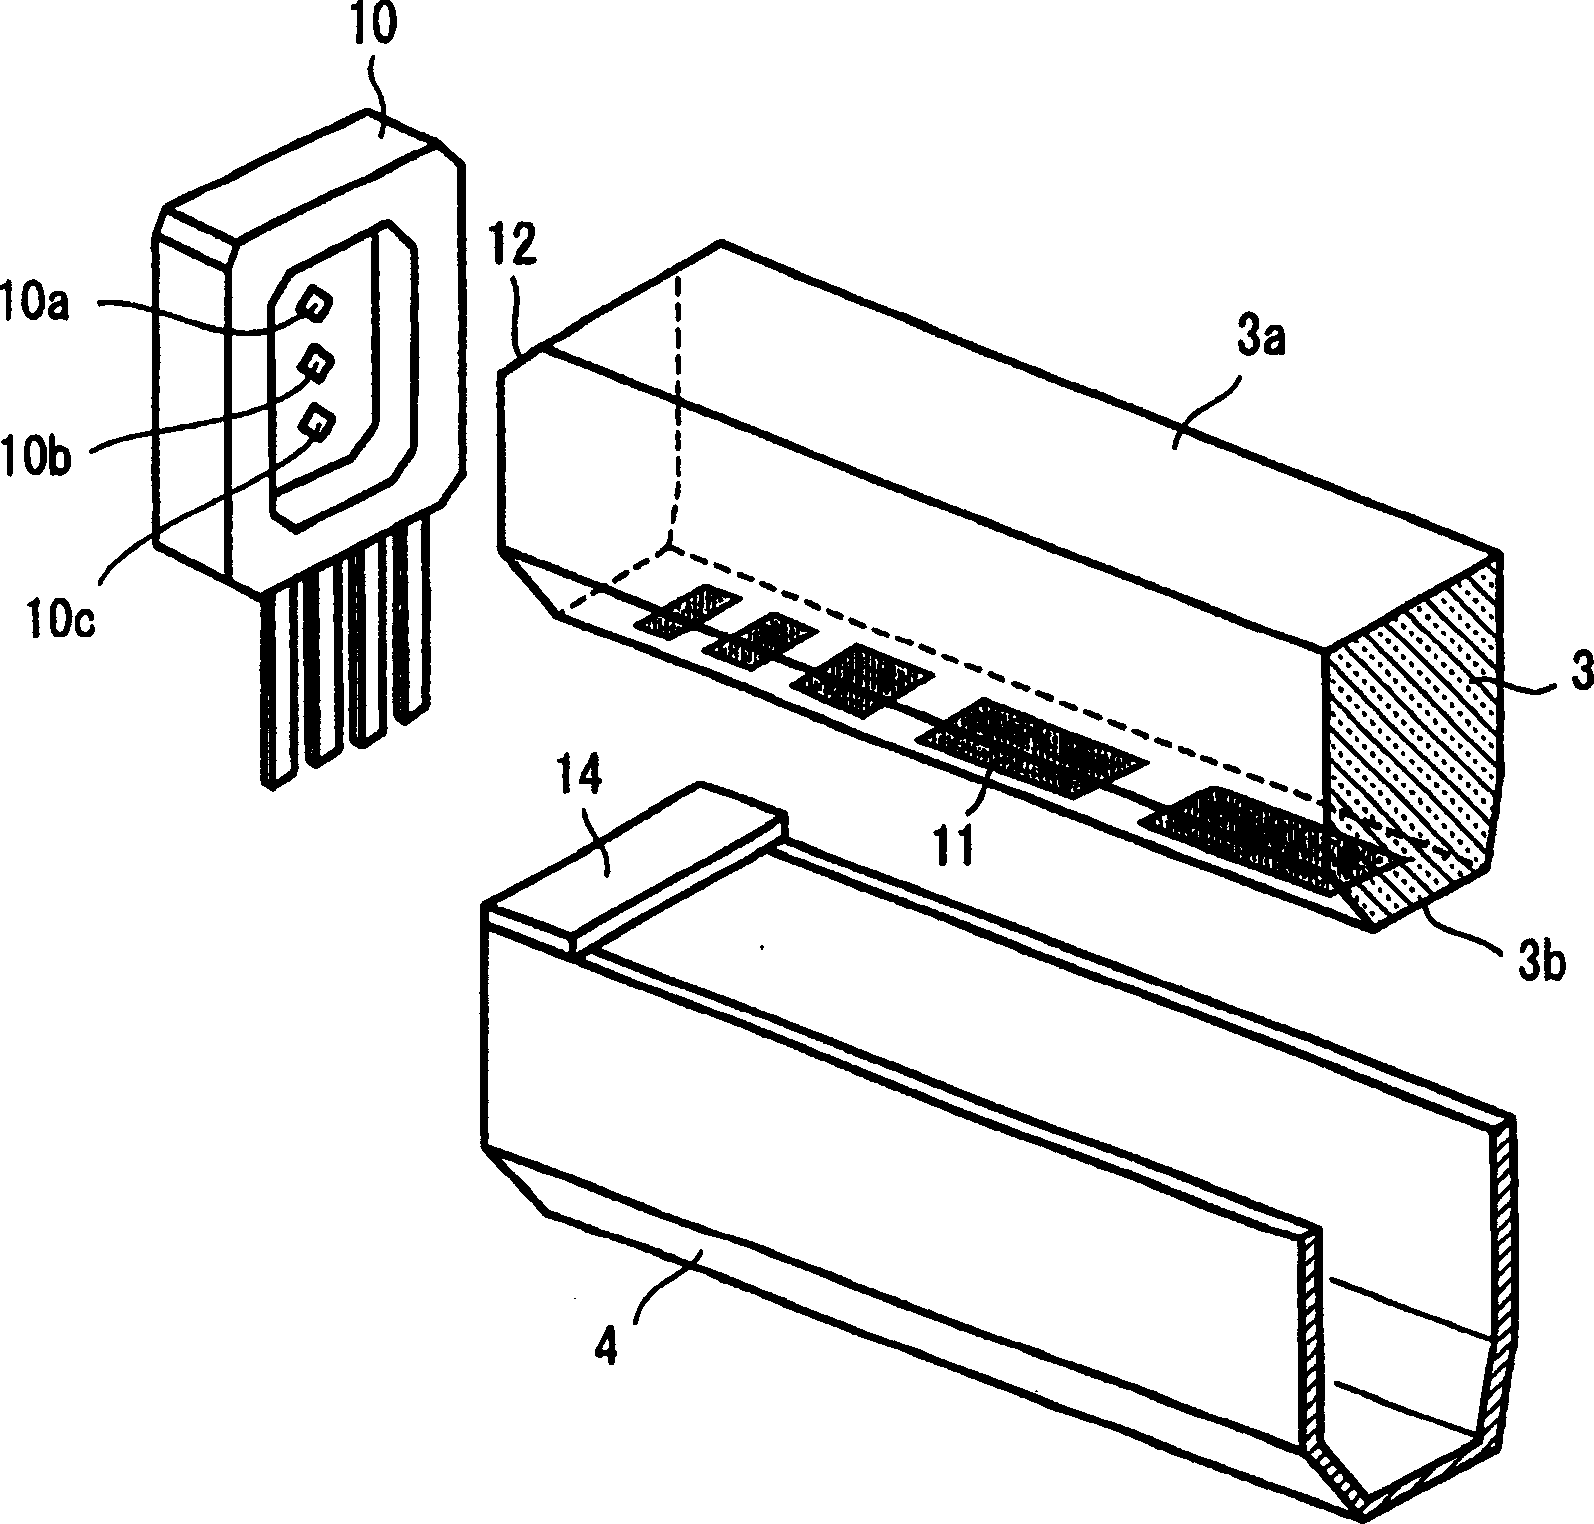 Illumination device and image scanning device